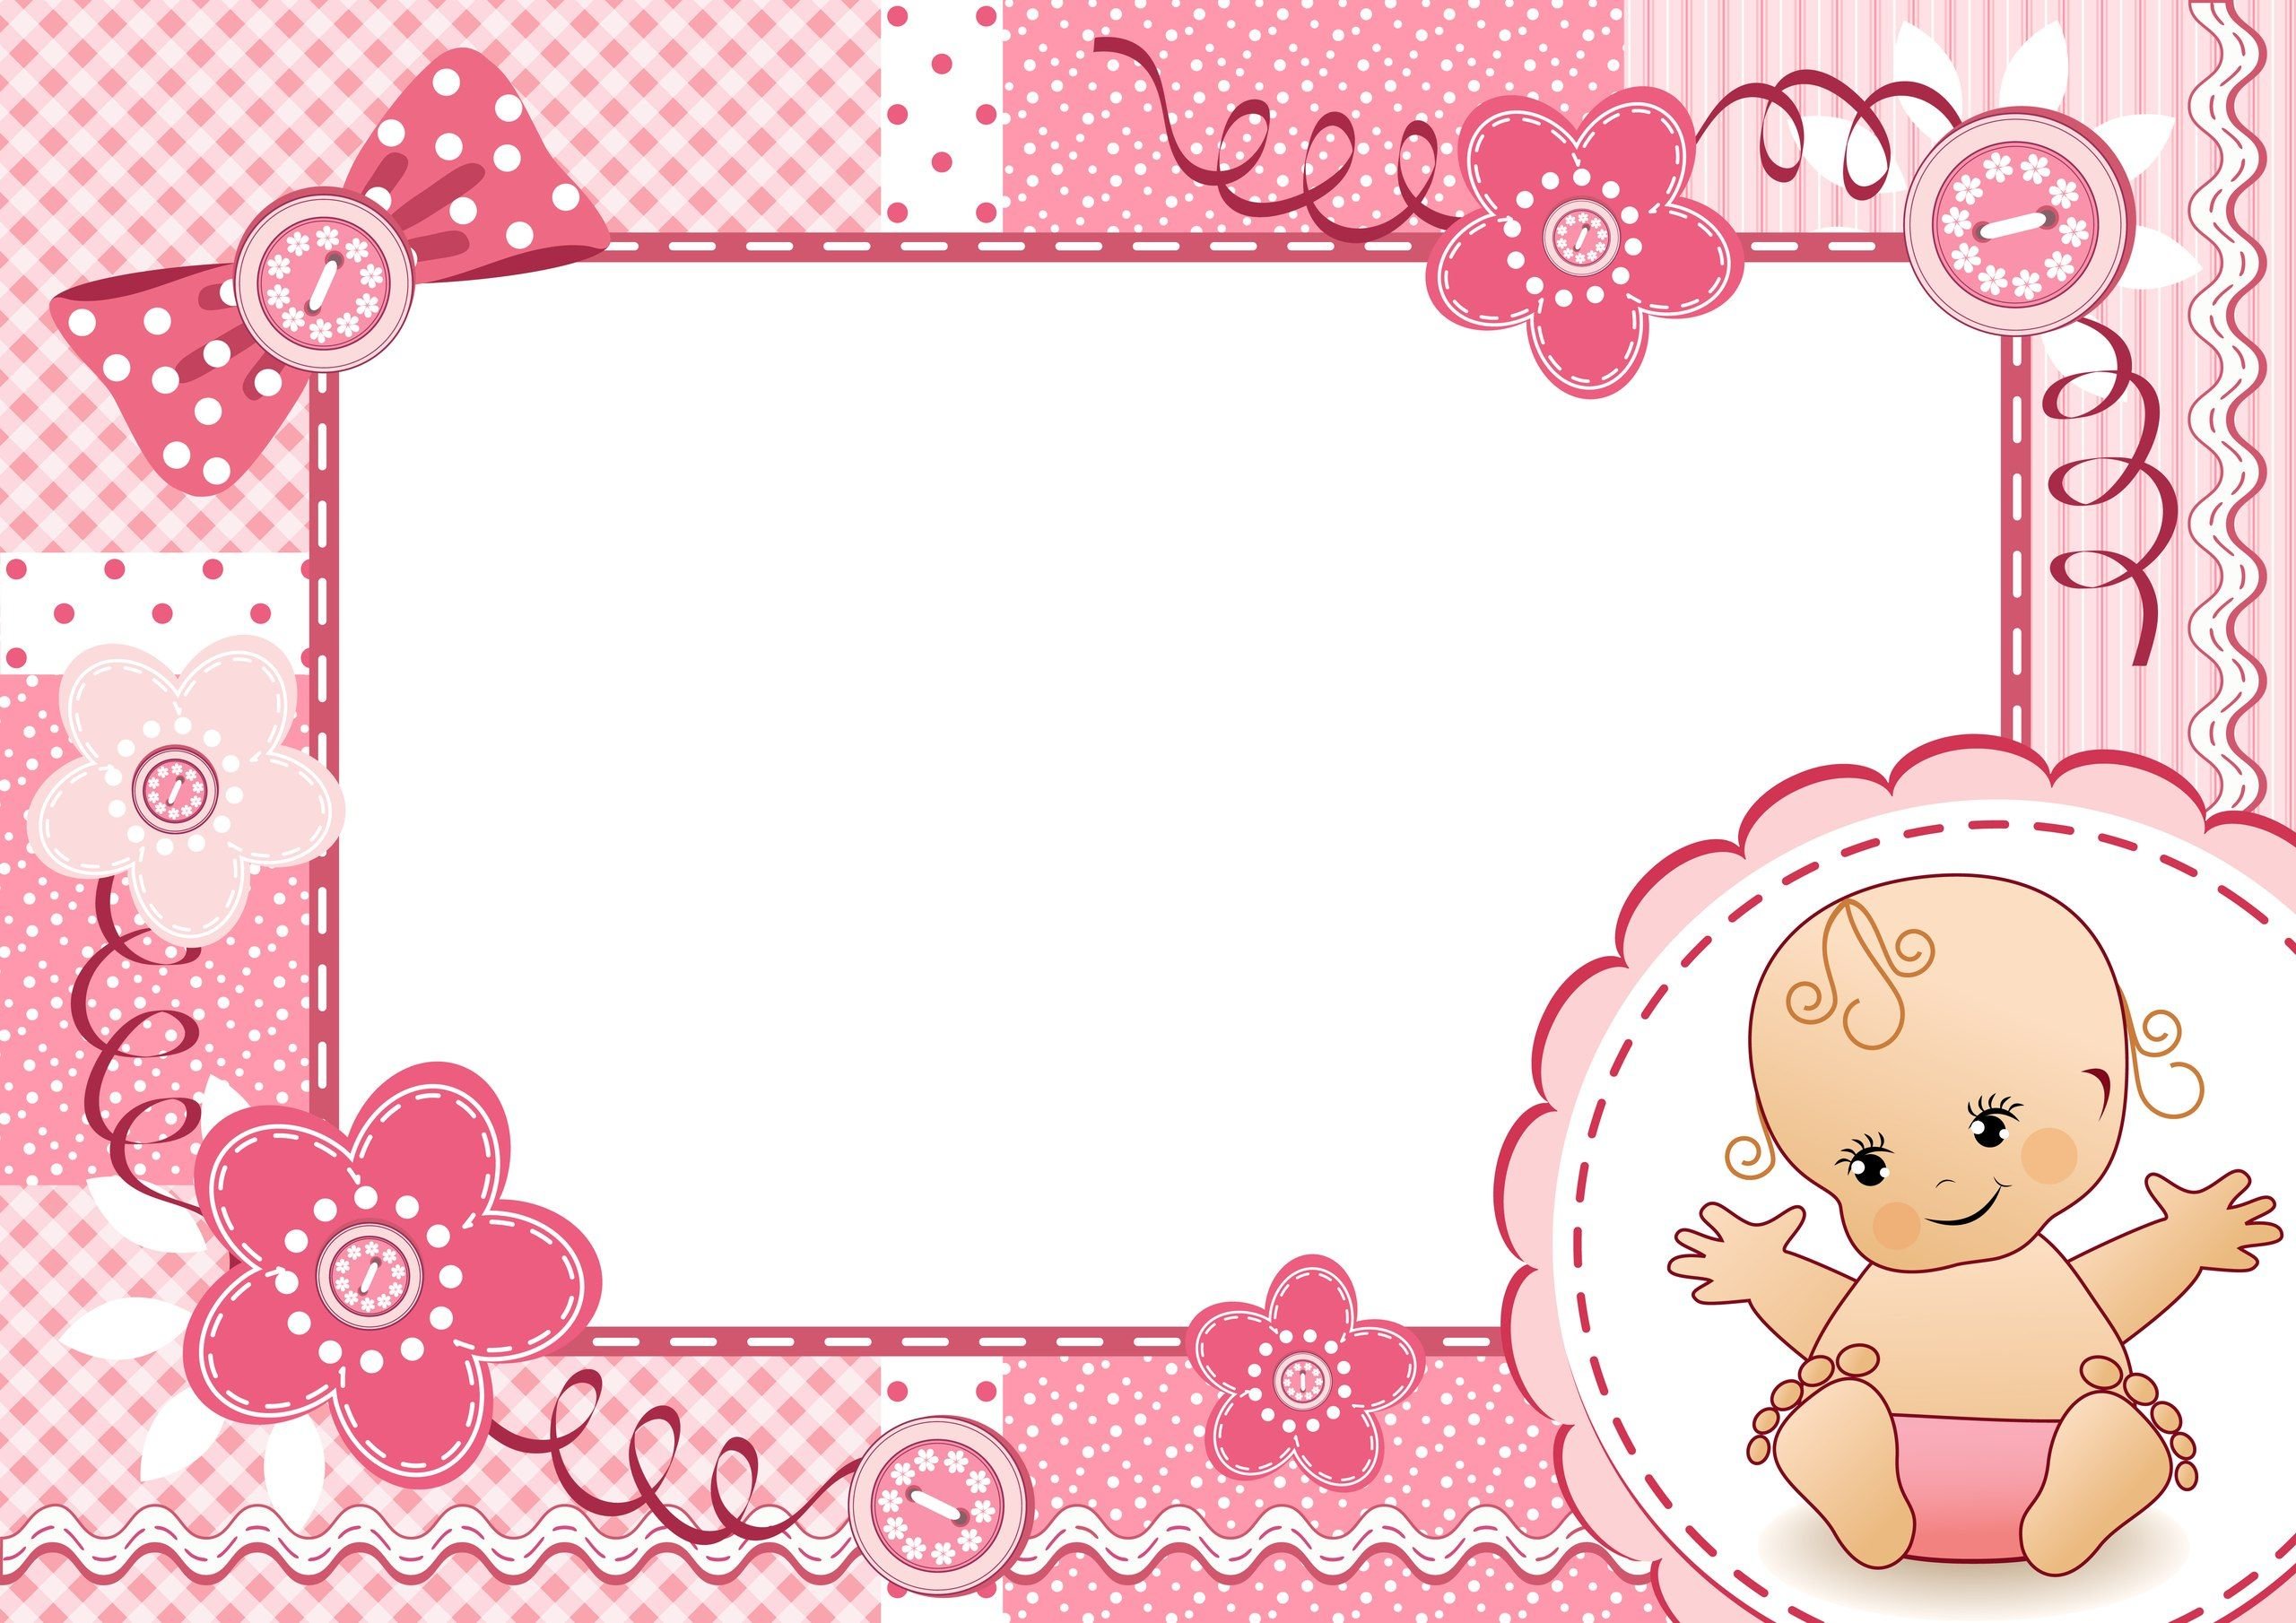 рамка для фото детская розовая с ангелом